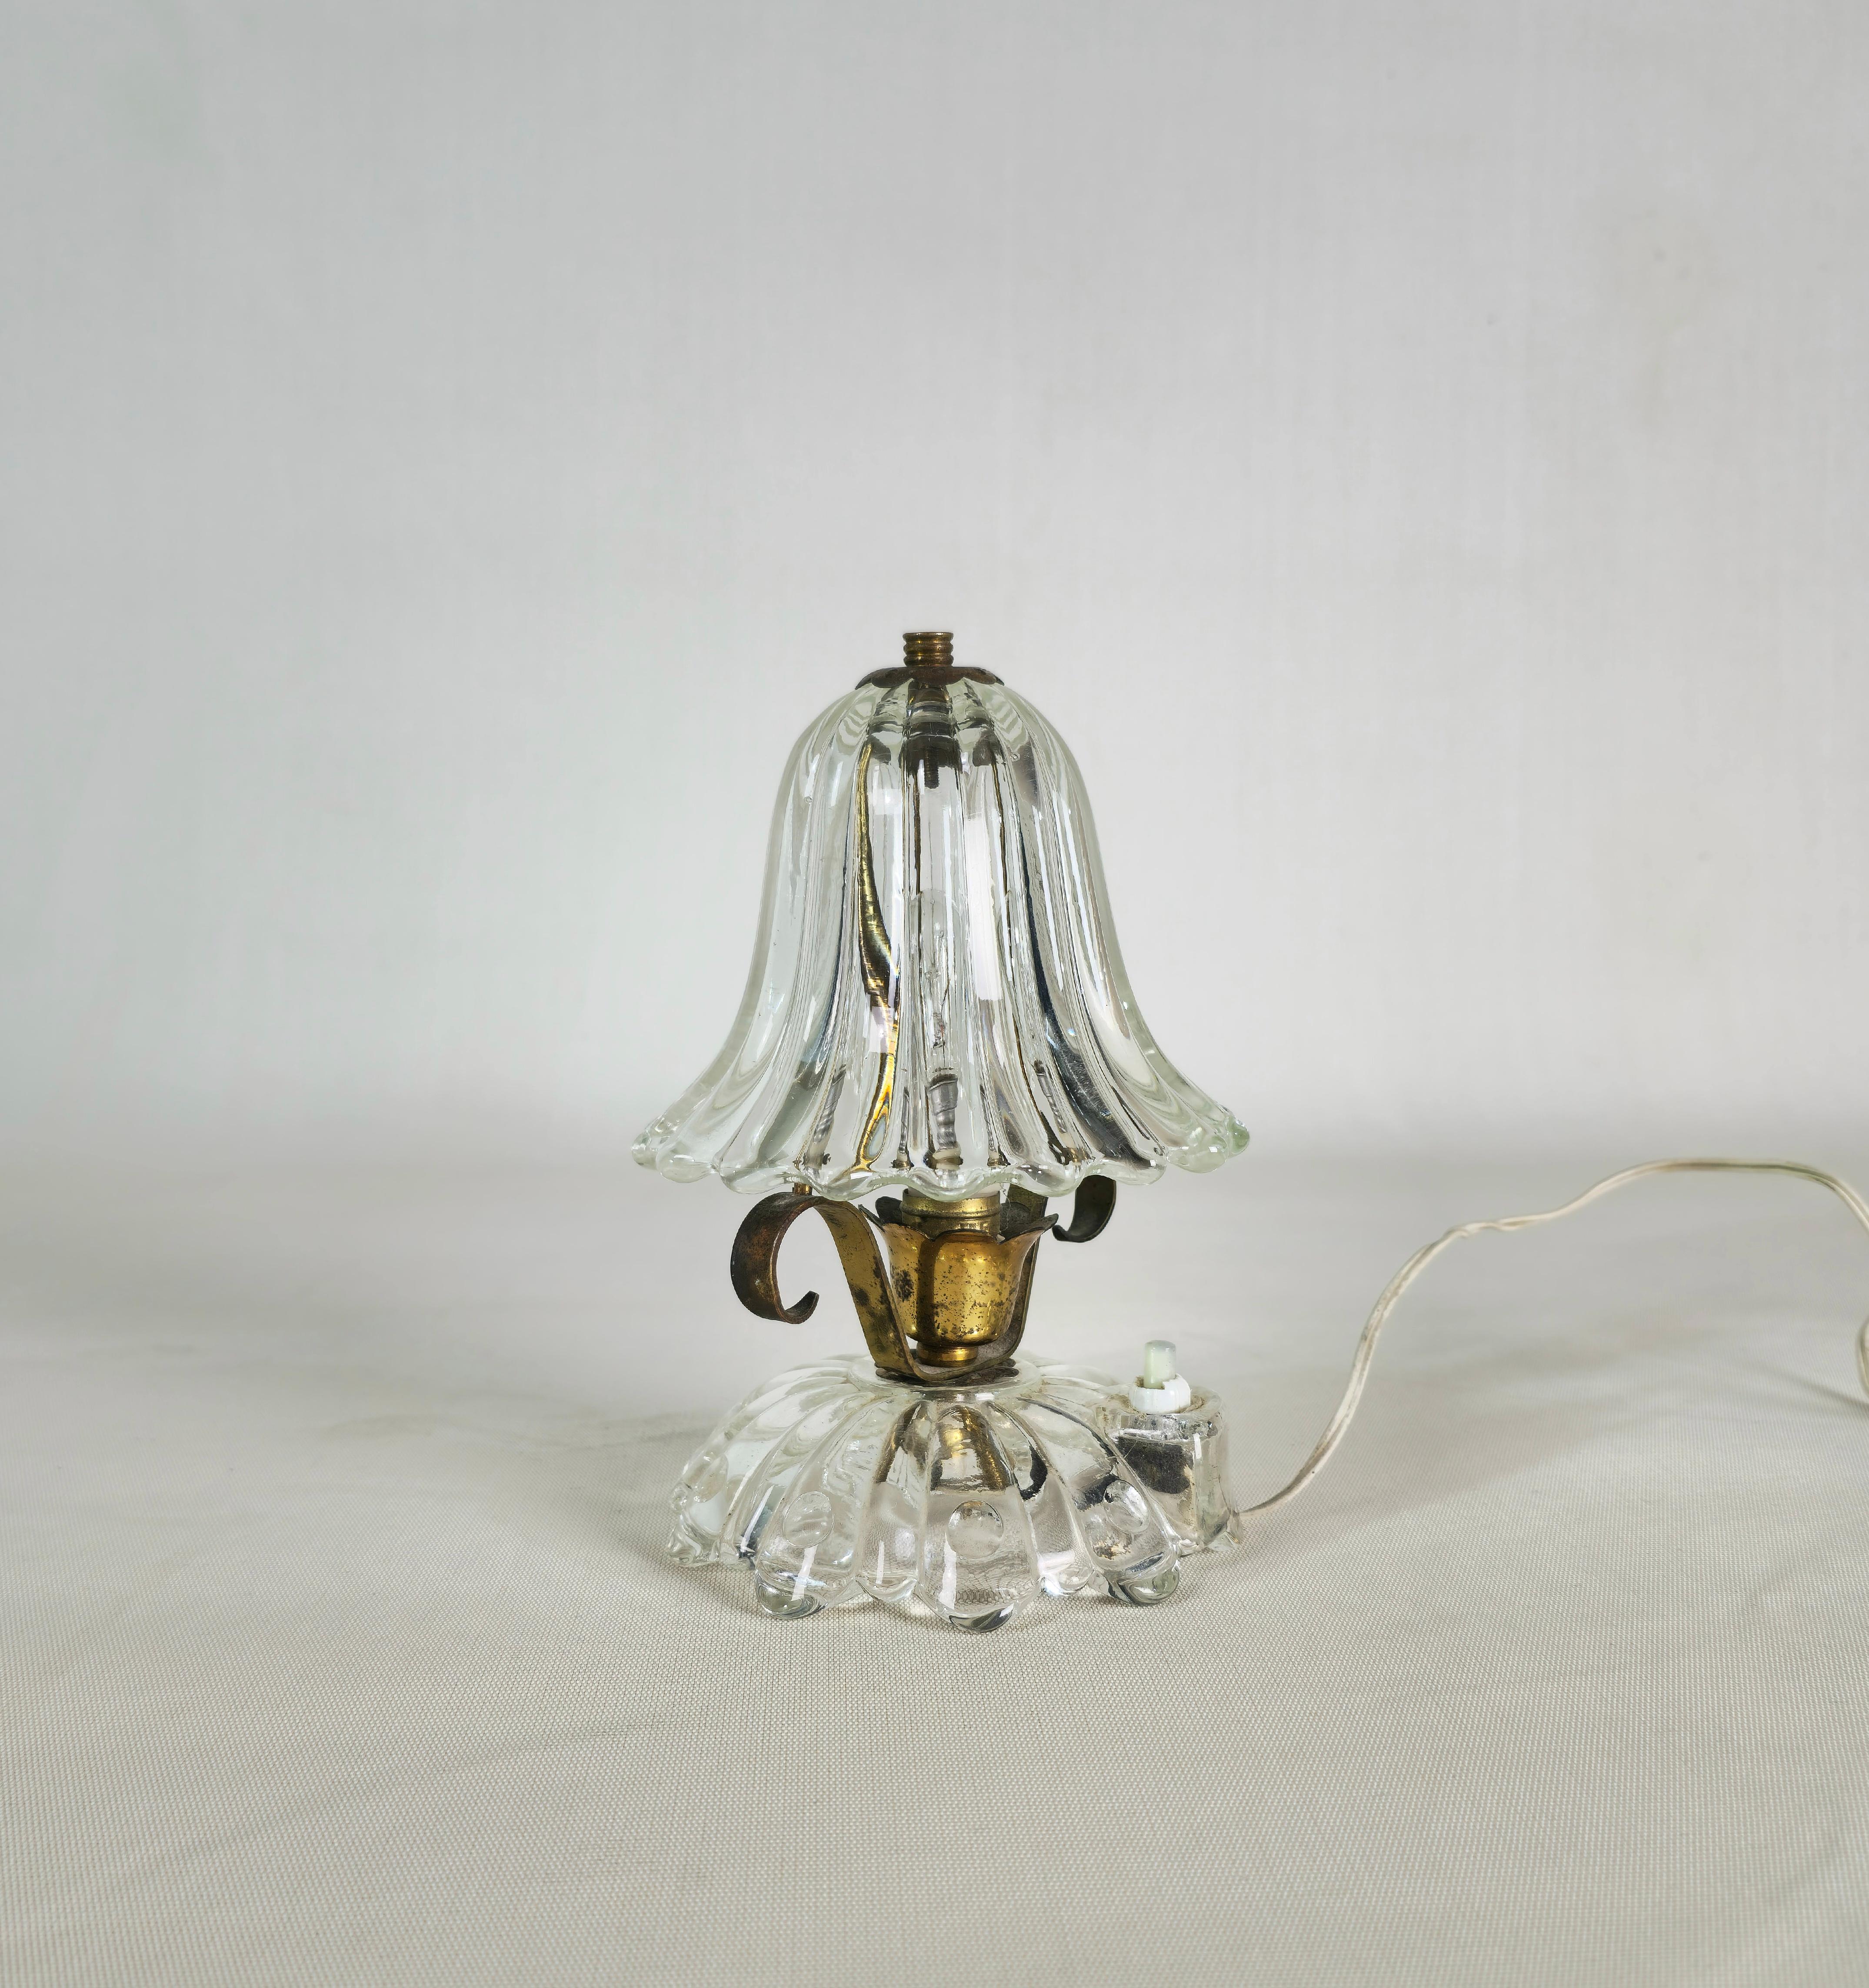 Petite lampe de table produite en Italie dans les années 1950 par Barovier&Toso.
La lampe à poser est composée d'une structure en laiton avec un diffuseur et une base en verre de Murano.


Note : Nous essayons d'offrir à nos clients un excellent